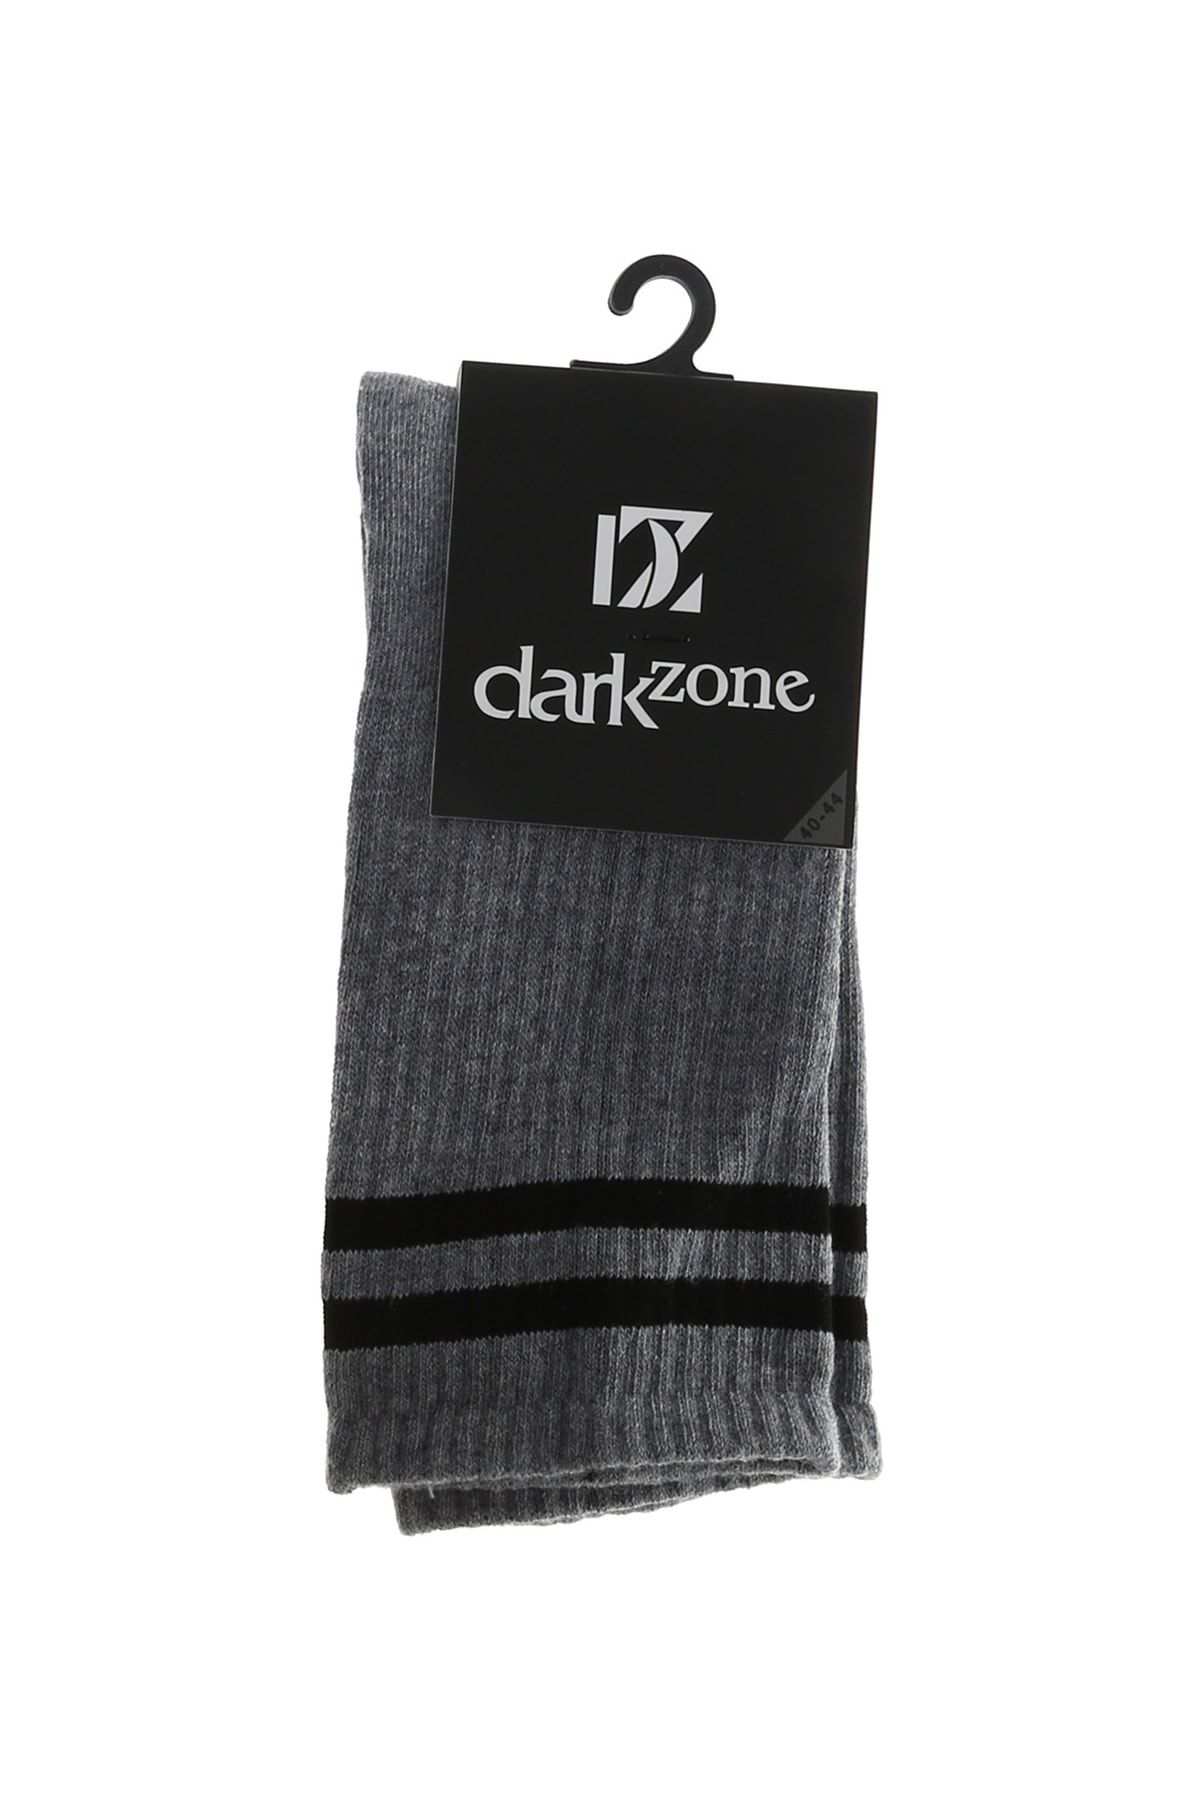 Darkzone Dzcp0033 Gri Erkek Çorap